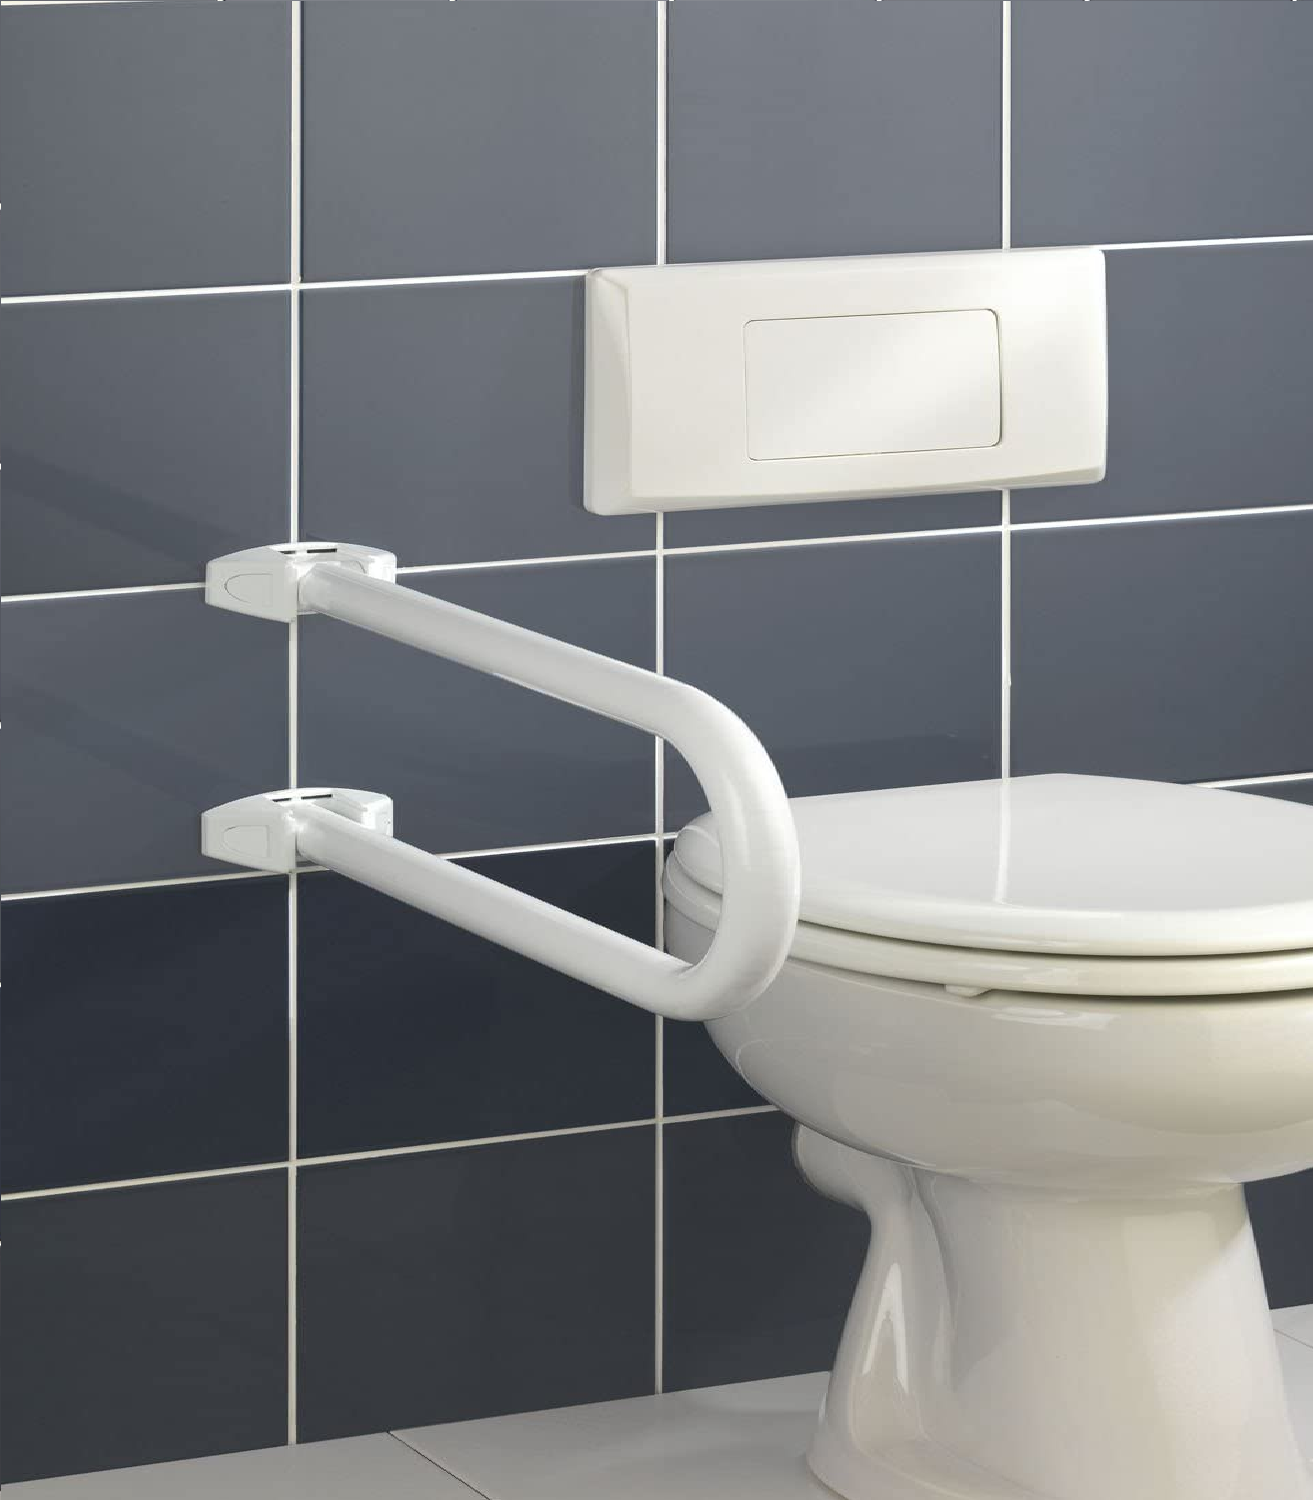 Badstützgriff Secura klappbar - für Waschbecken- und WC-Sitz Bereich, klappbar, Aluminium, 53 x 21 x 10 cm, Weiß